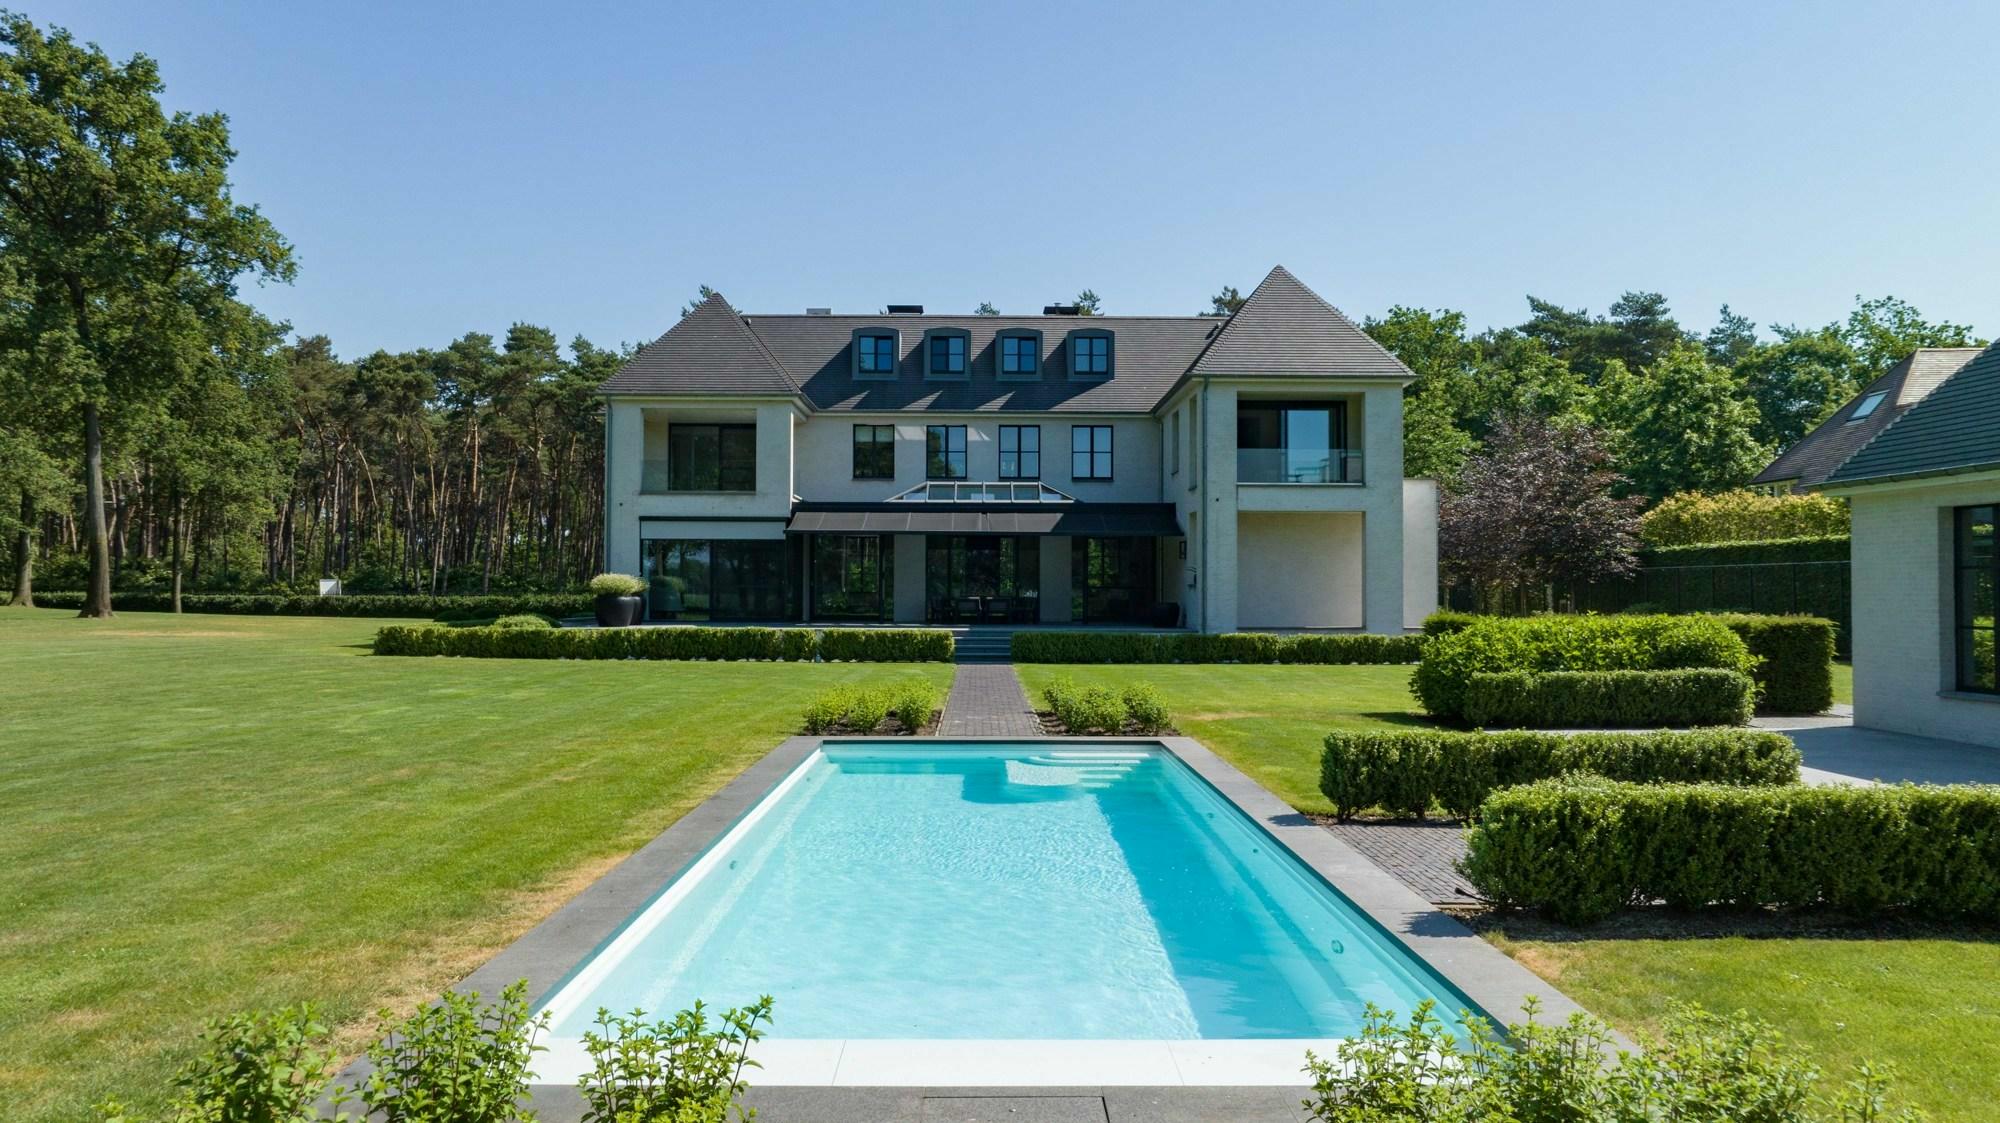 Exclusieve villa op ca. 9.500 m² op prachtige locatie te Oud-Turnhout.